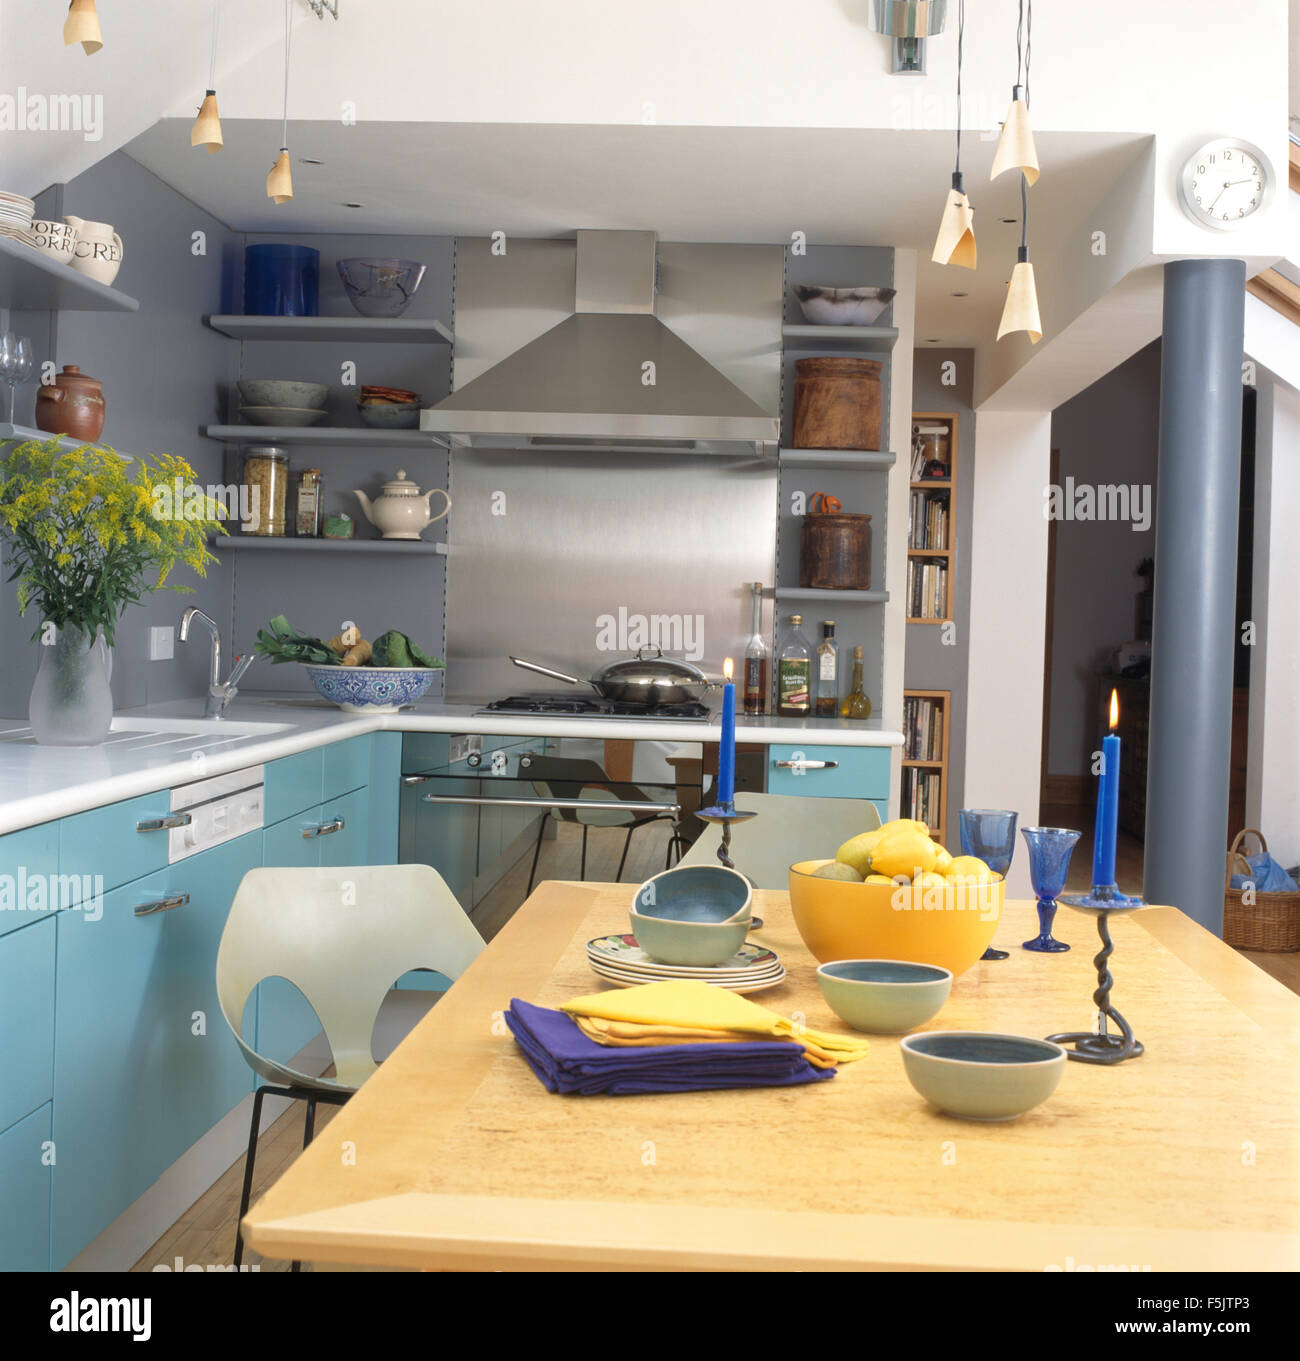 Blaue Kerzen auf hellen Holztisch in grauen Küche Erweiterung mit Türkis-Einheiten und eine Edelstahl-Dunstabzug Stockfoto